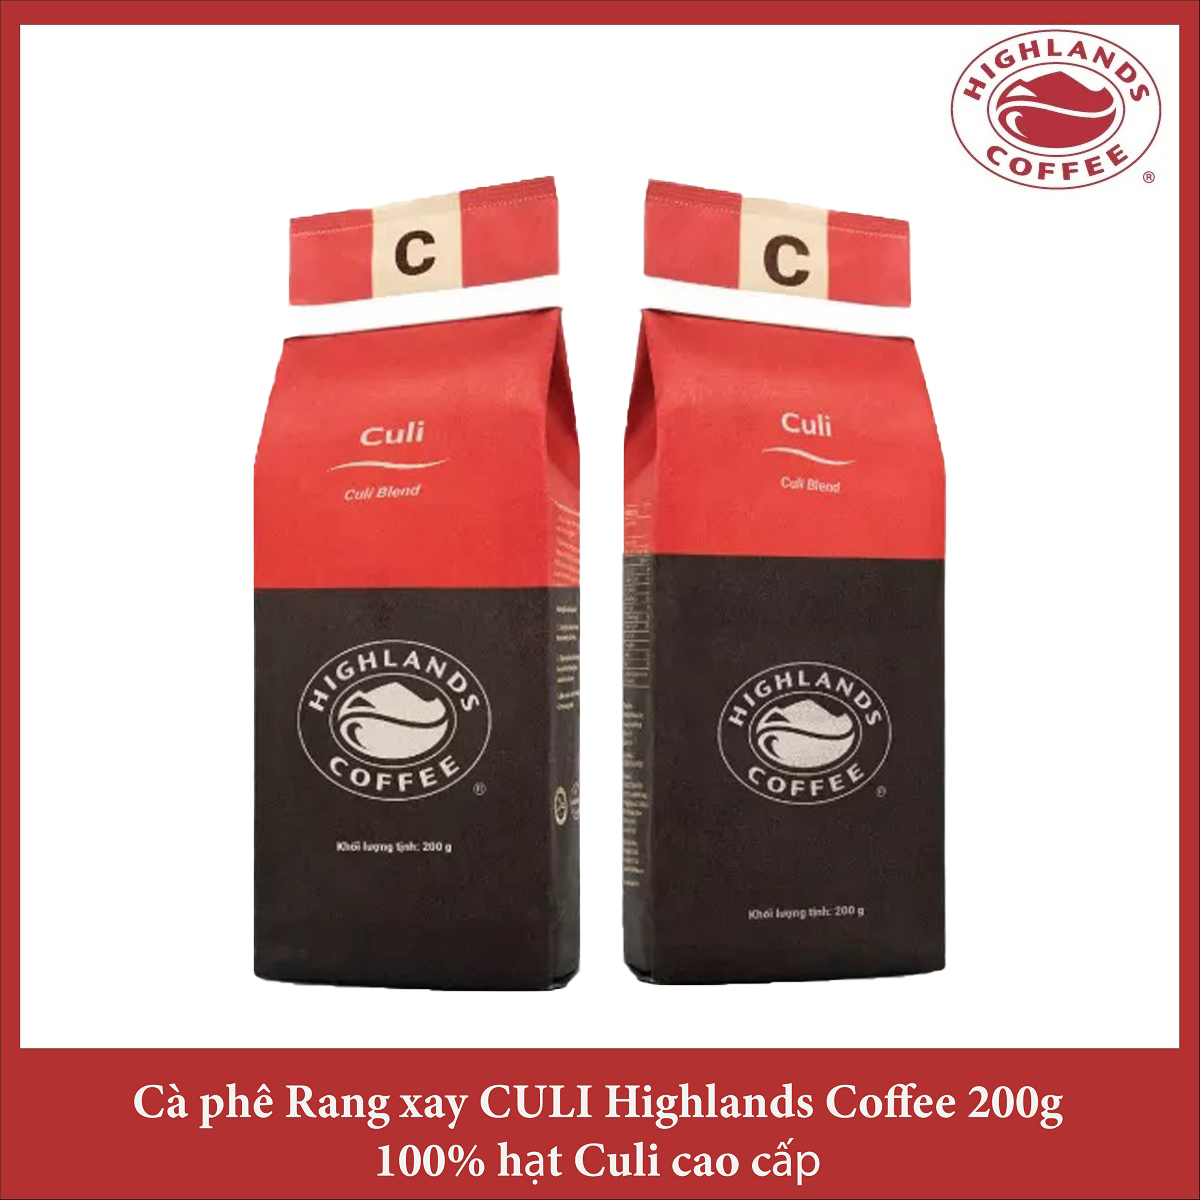 Combo 2 gói Cà phê rang xay Culi Highlands coffee 200g - Culi Blend